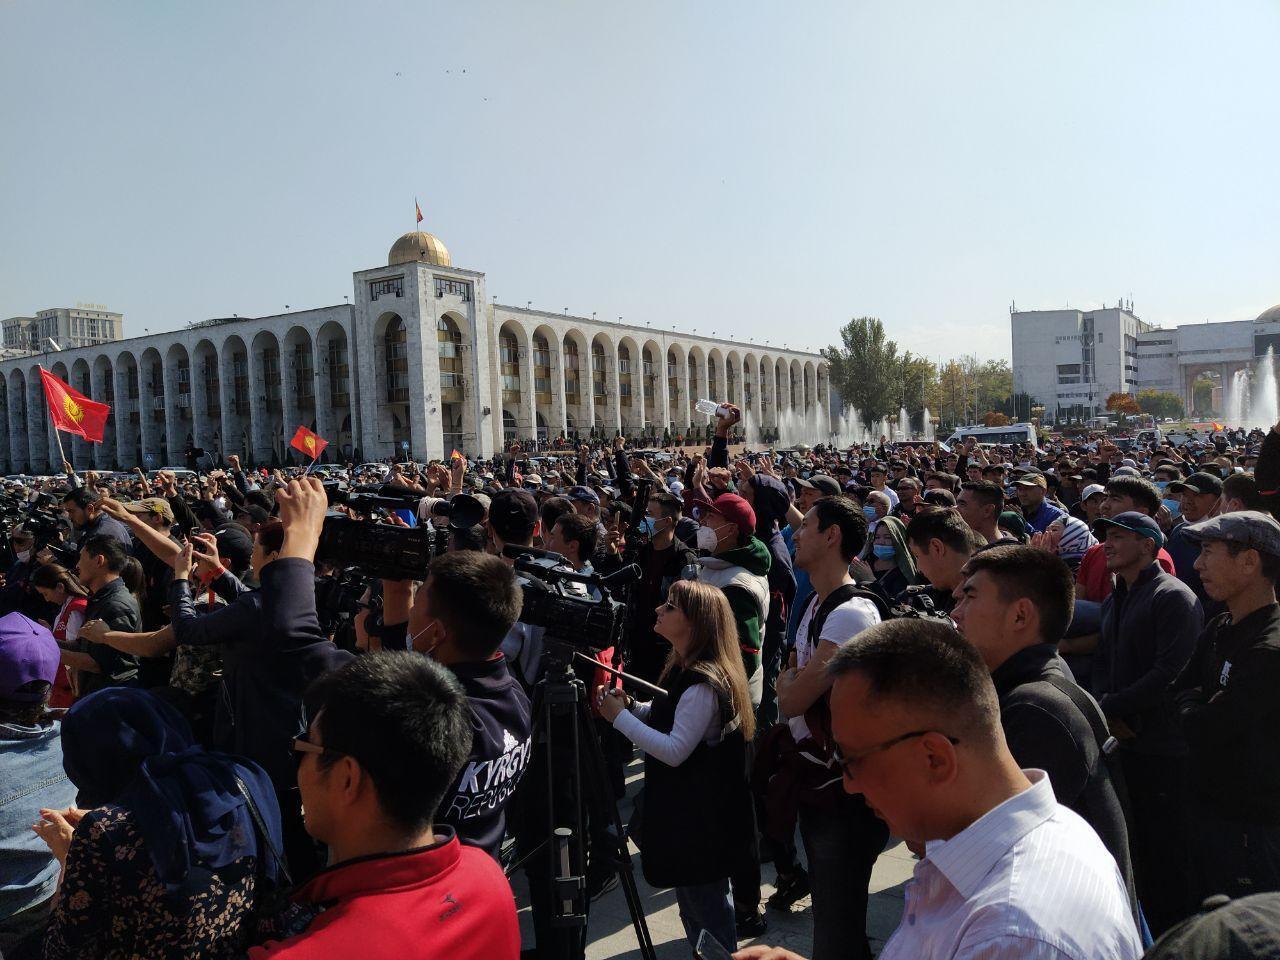 Кыргызстан вышел на "Майдан, как в Украине": 130 раненых. Все о противостояниях, фото и видео